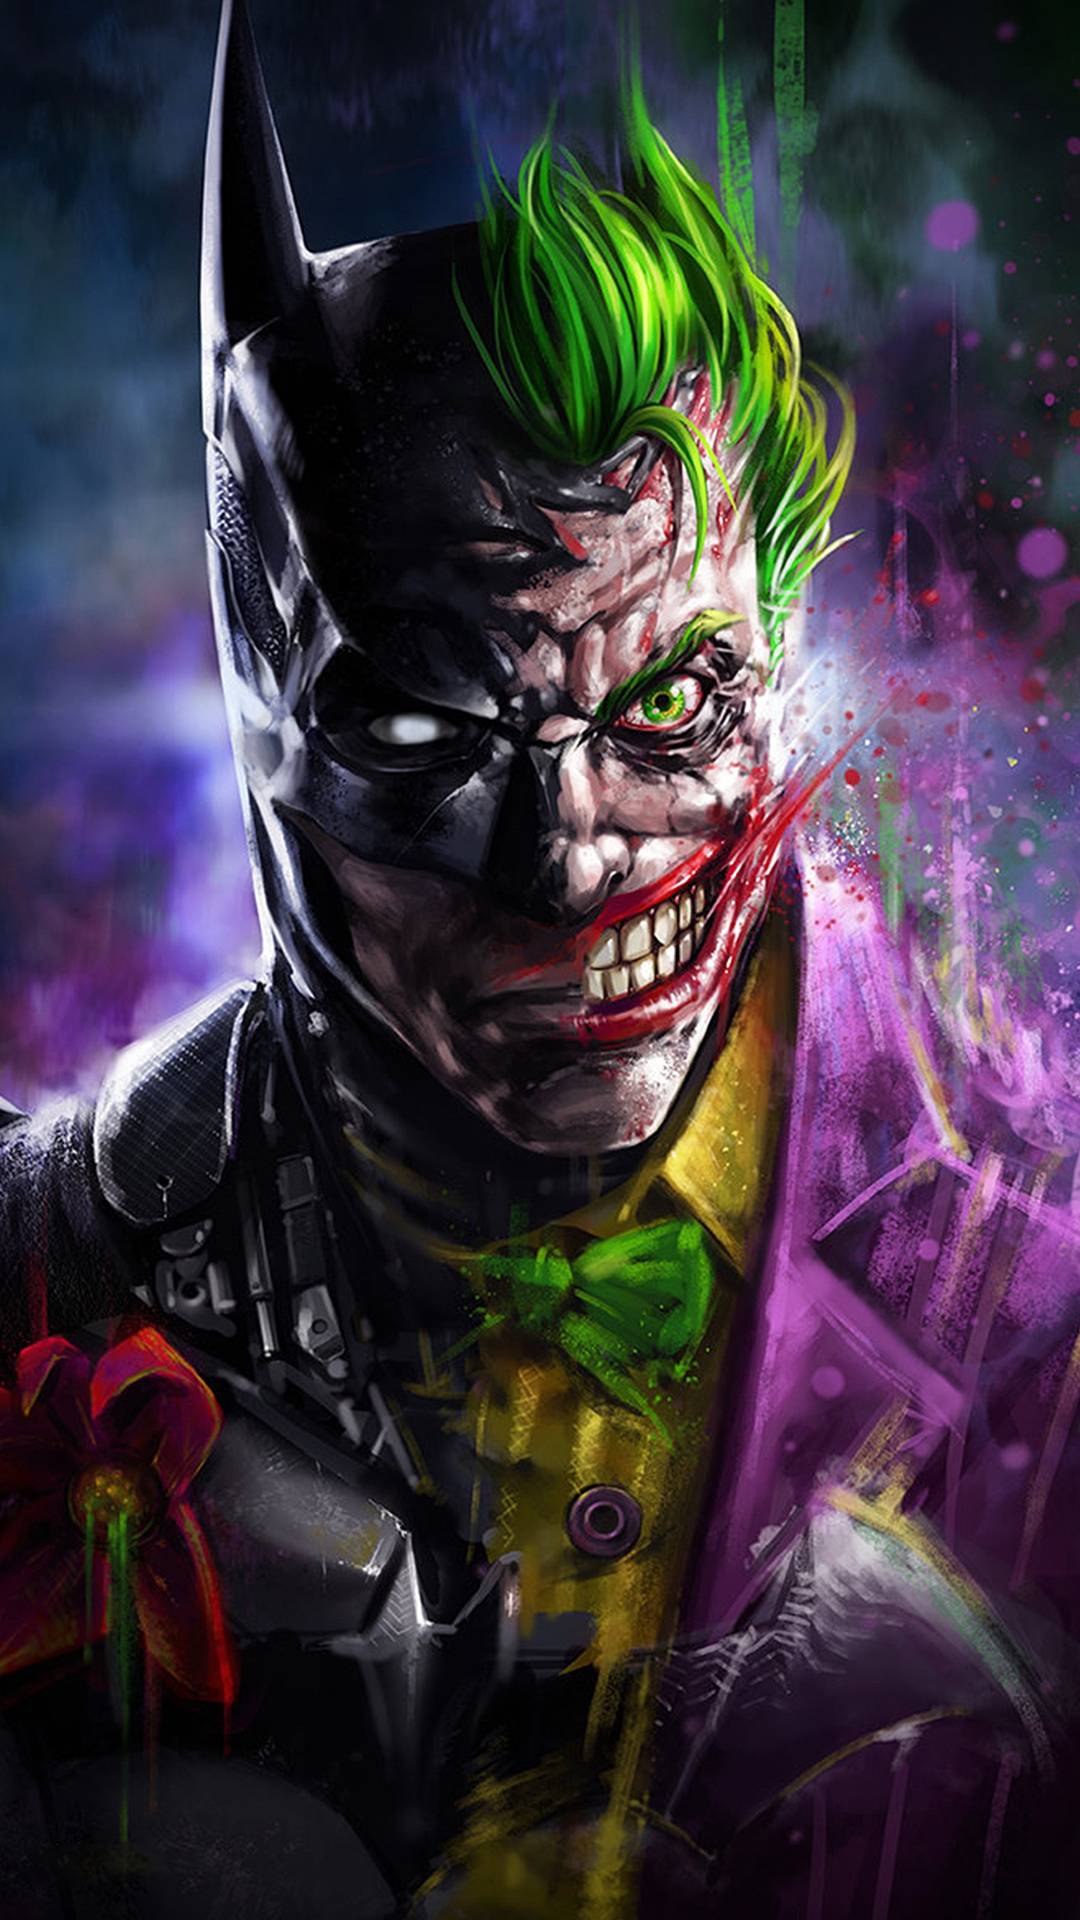 Batman Vs Joker IPhone Wallpaper - IPhone Wallpapers : iPhone Wallpapers